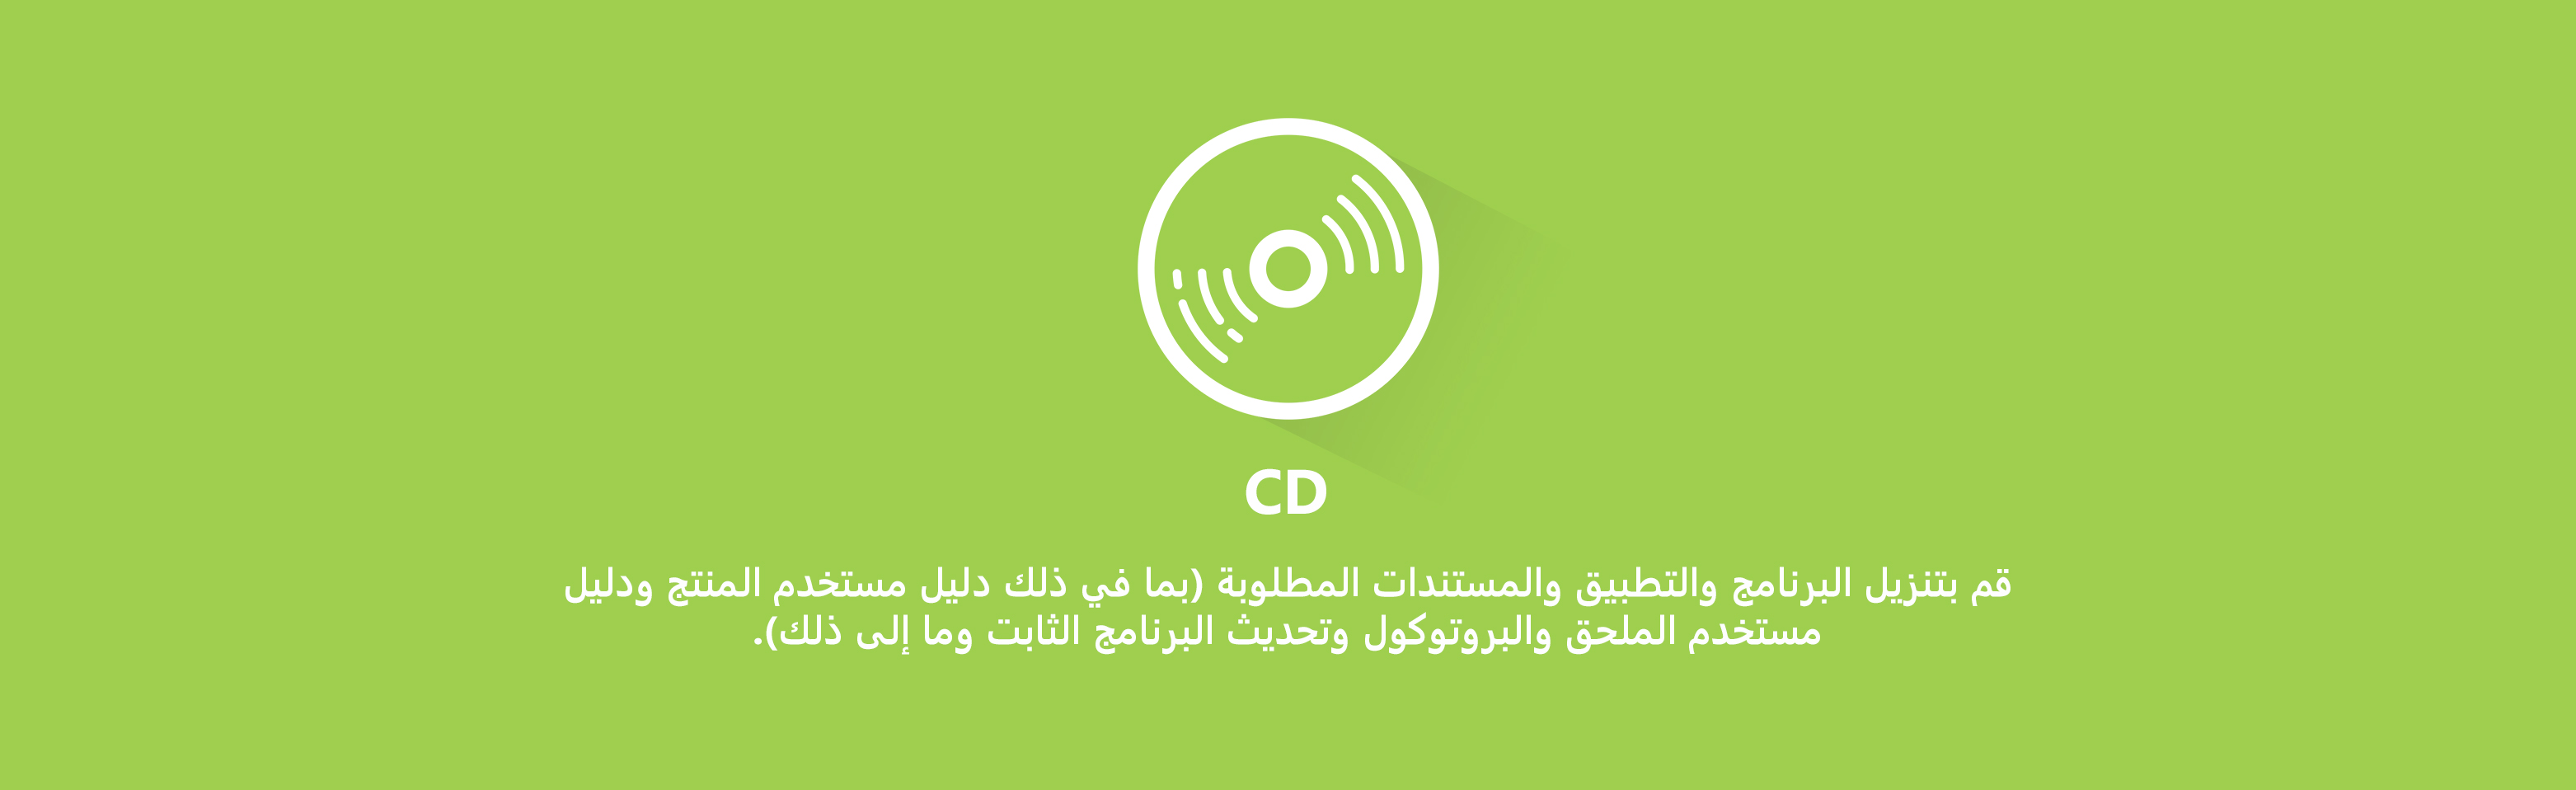 CD download